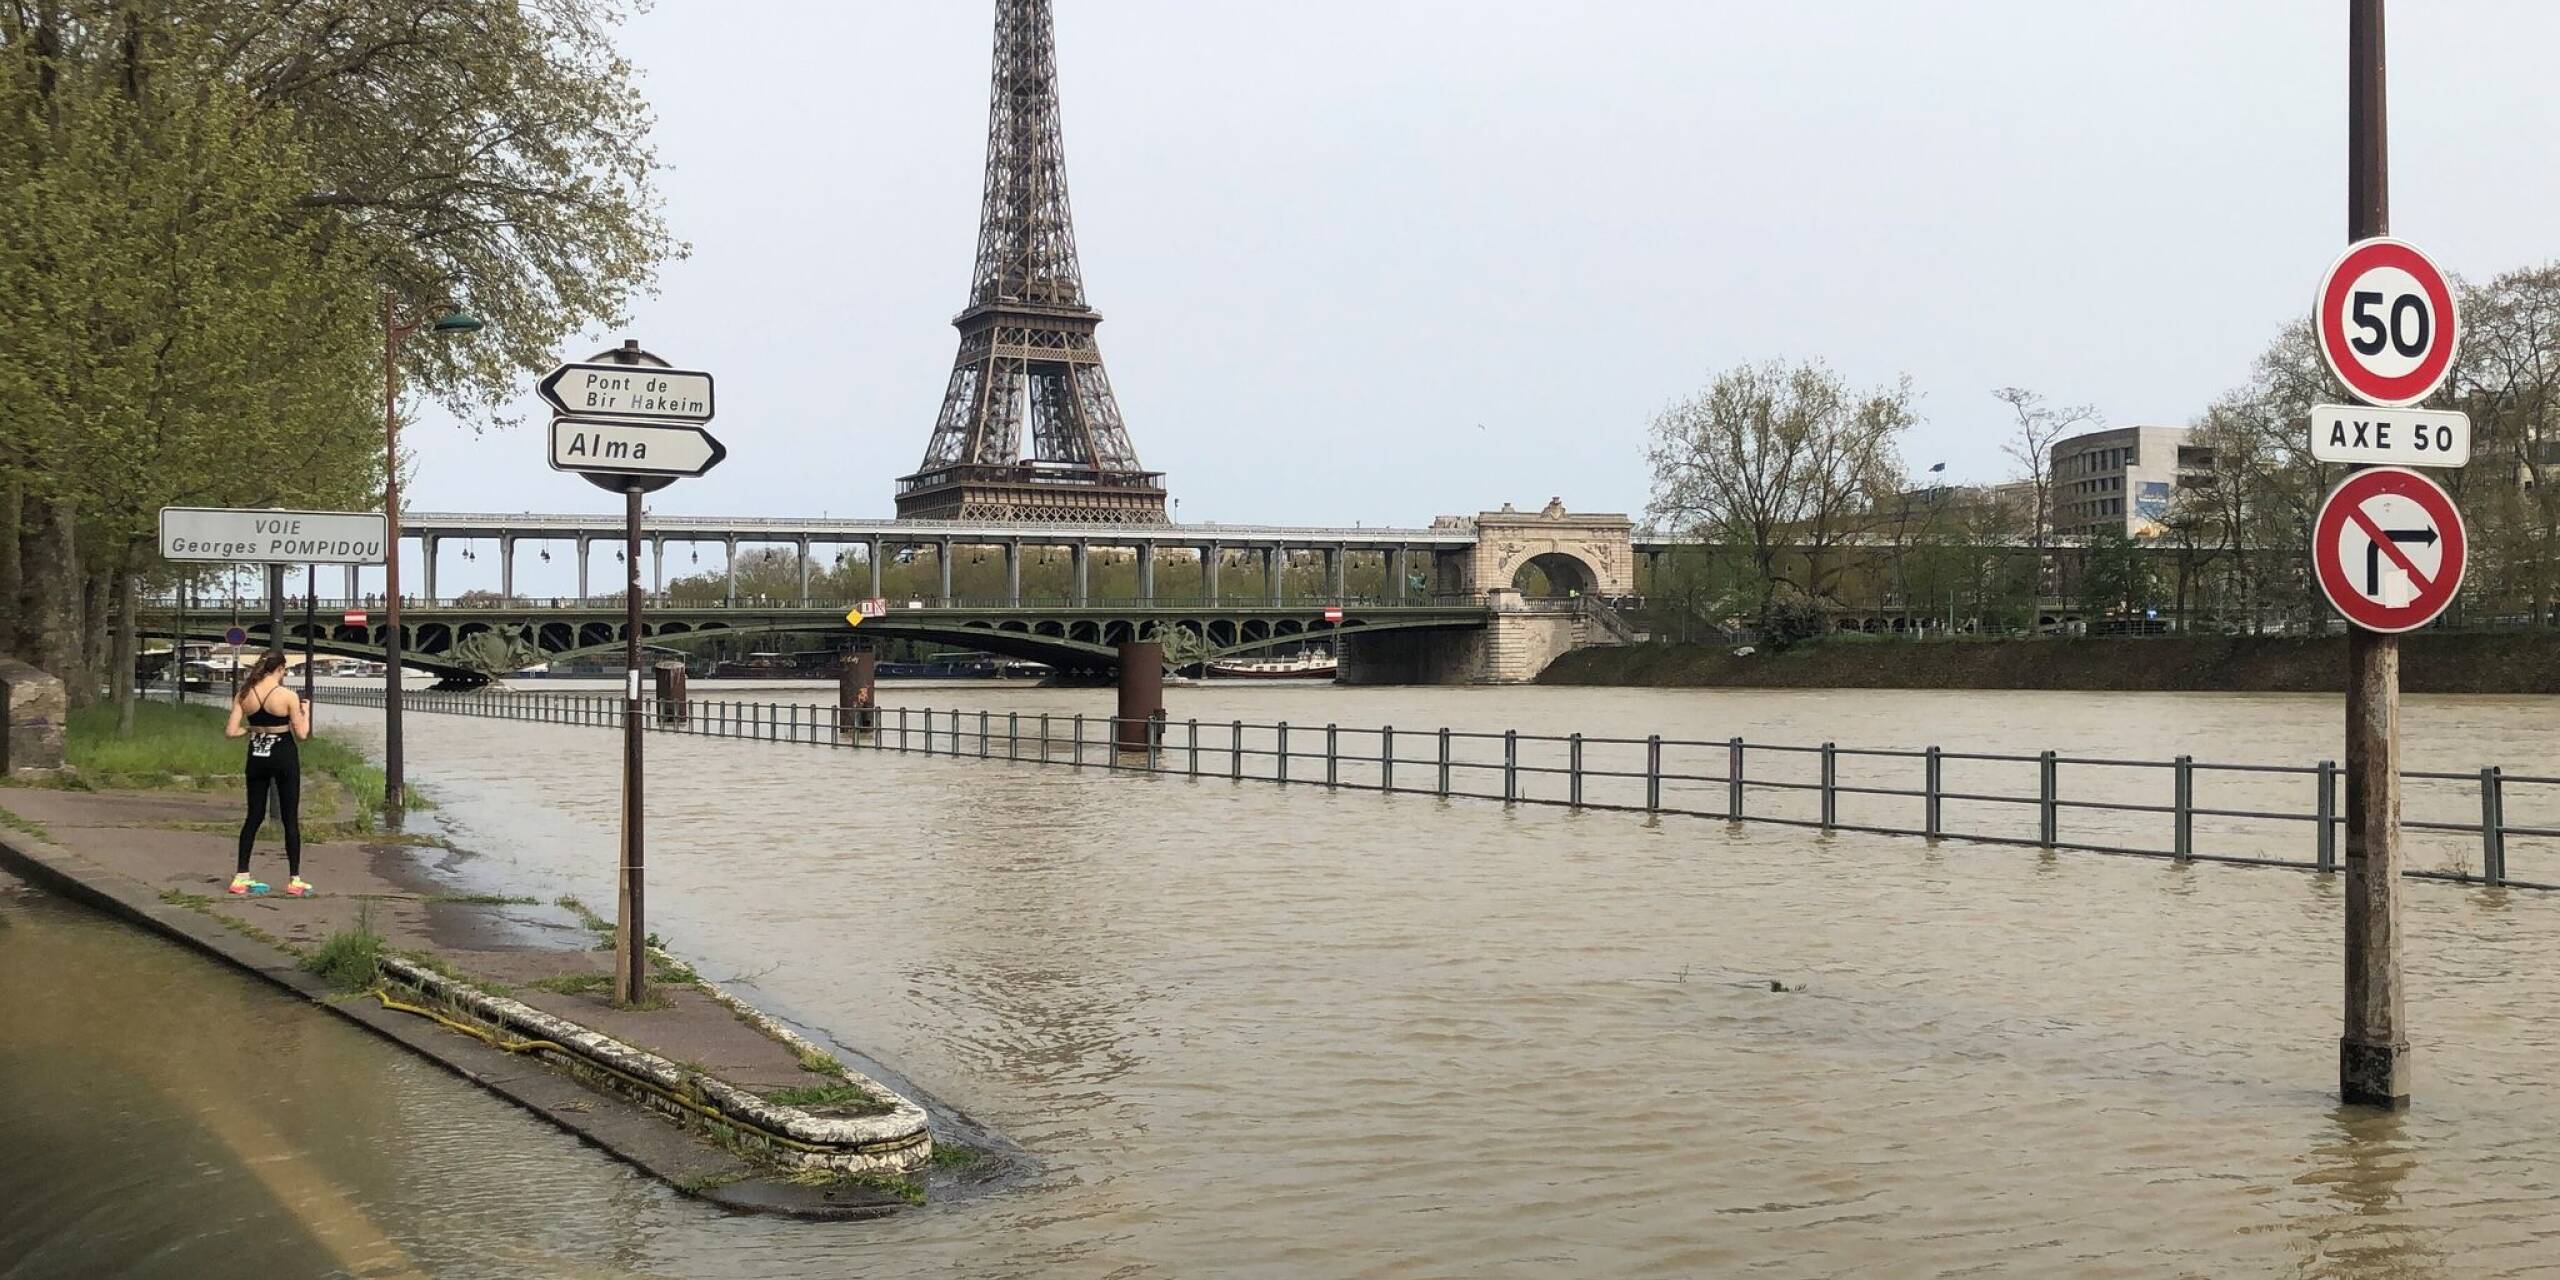 Nach schweren Regenfällen in Teilen von Frankreich ist die Seine in Paris über die Ufer getreten. Die Route des Marathon am morgigen Sonntag muss nun leicht angepasst werden.